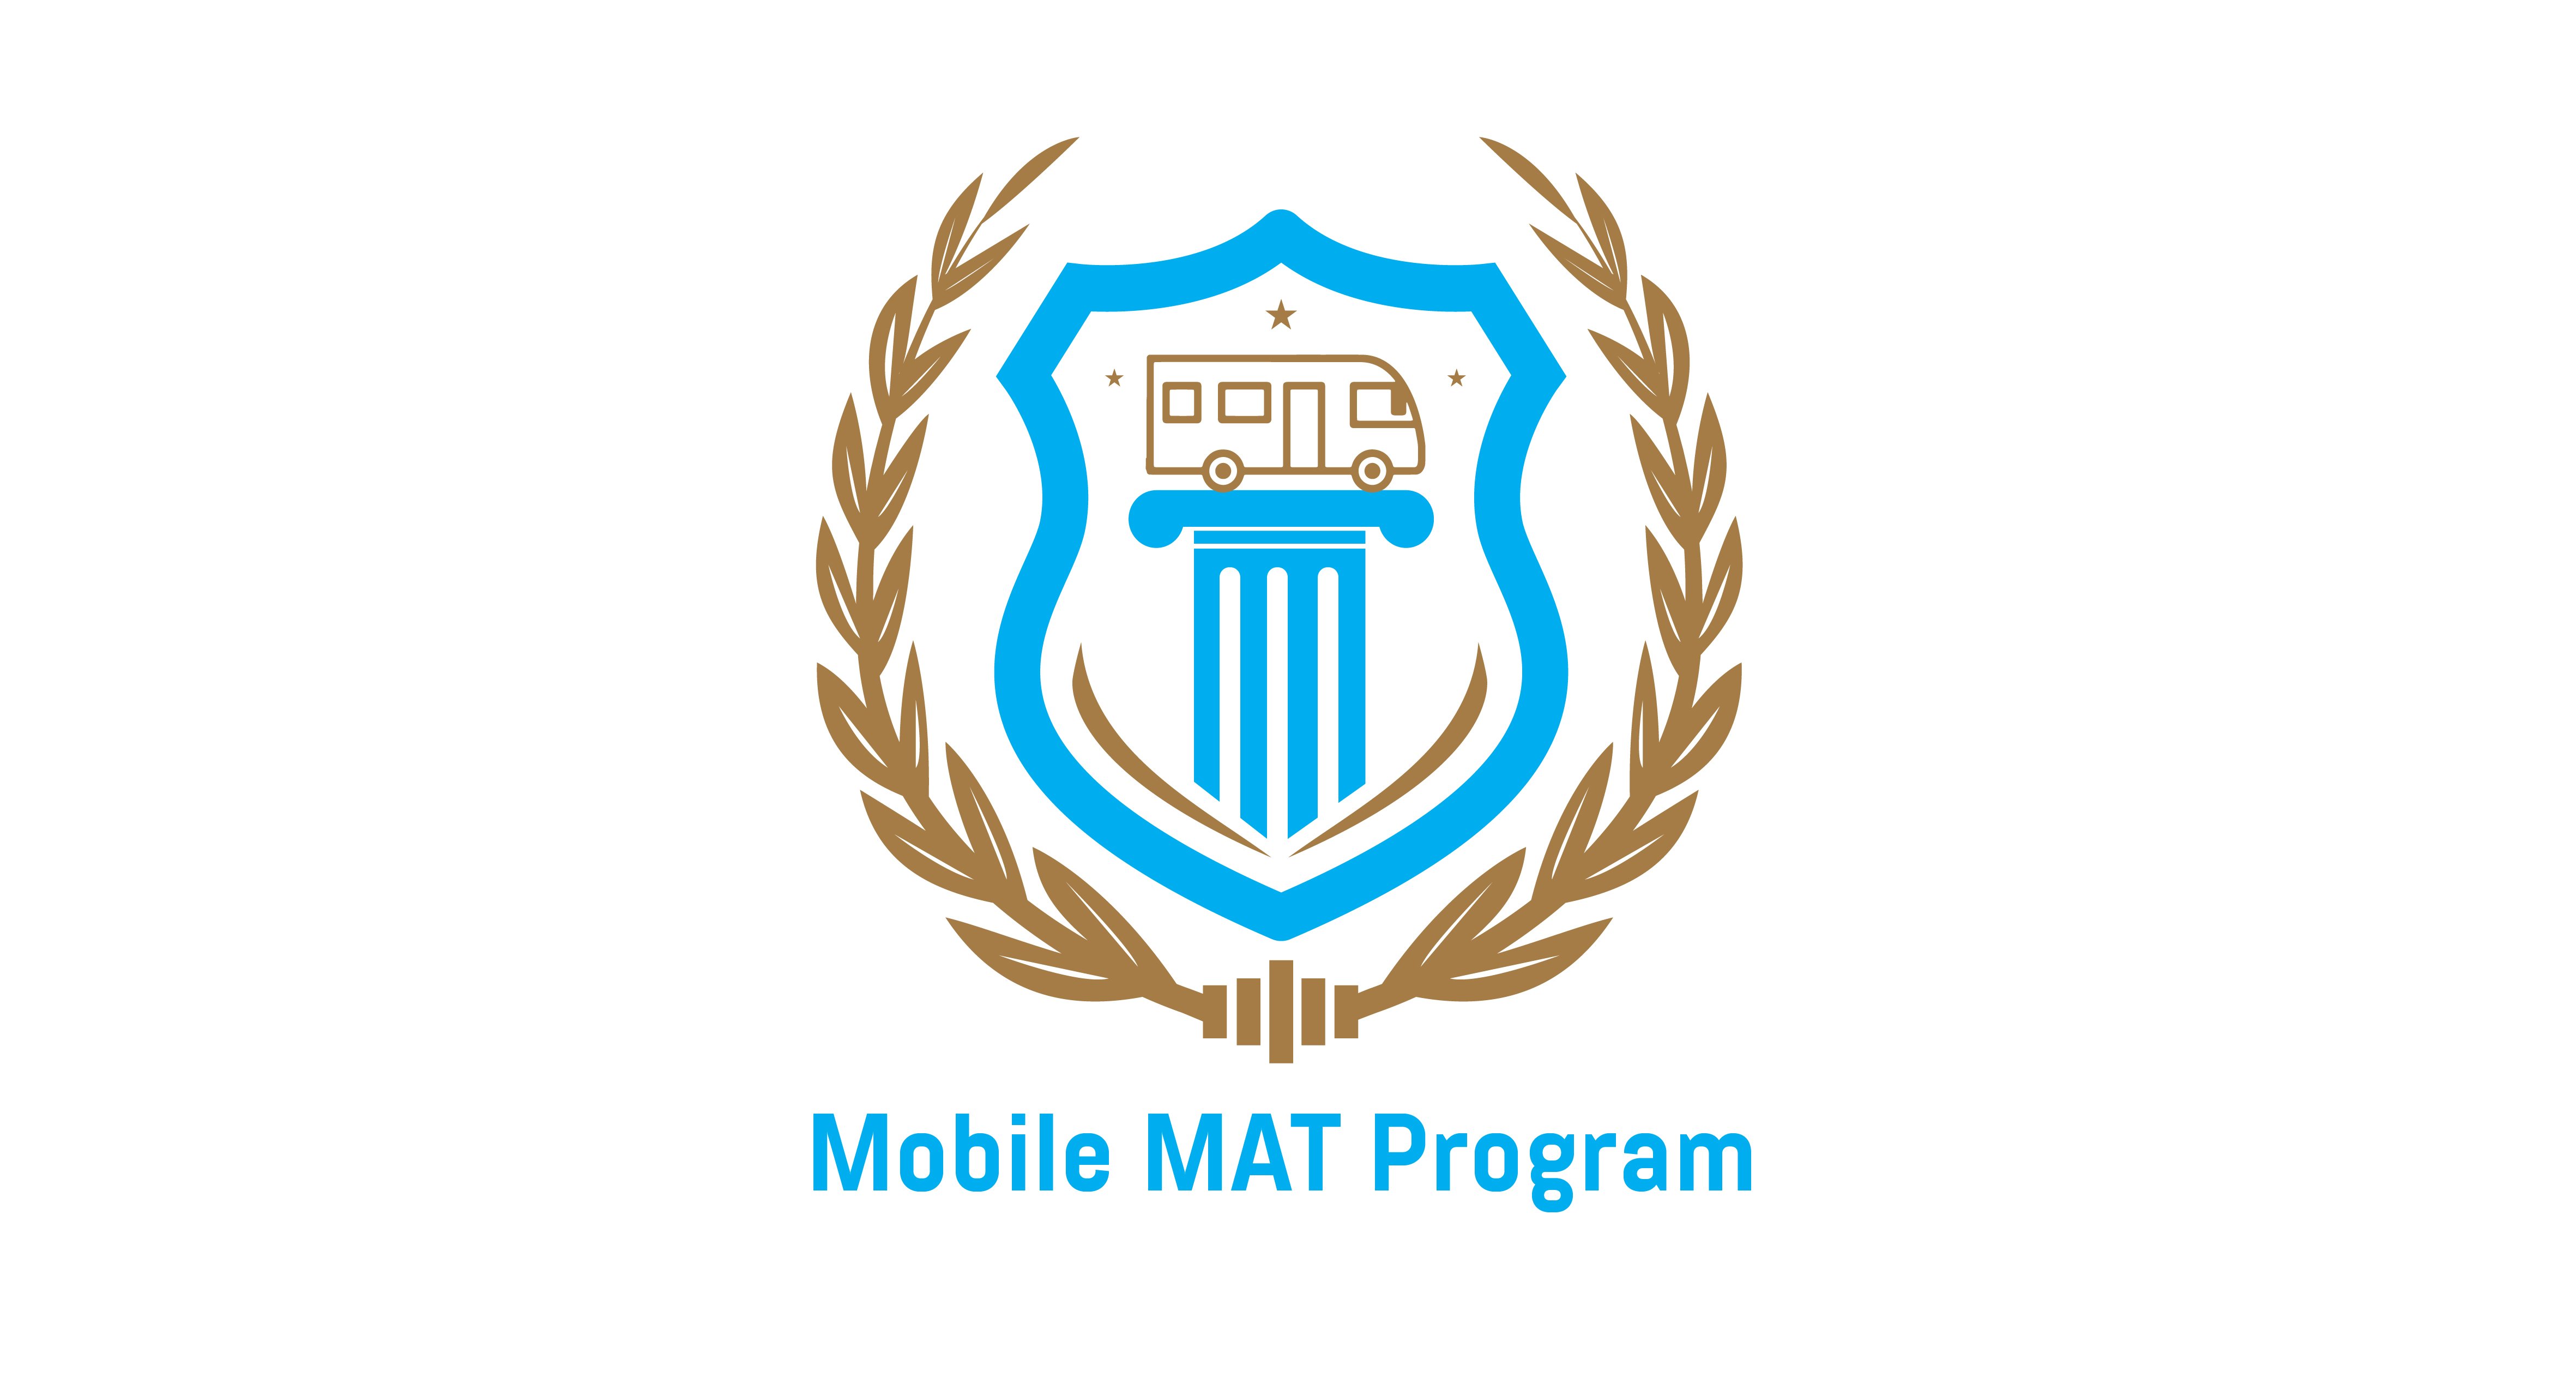 Mobile MAT Program CARD better-01-1